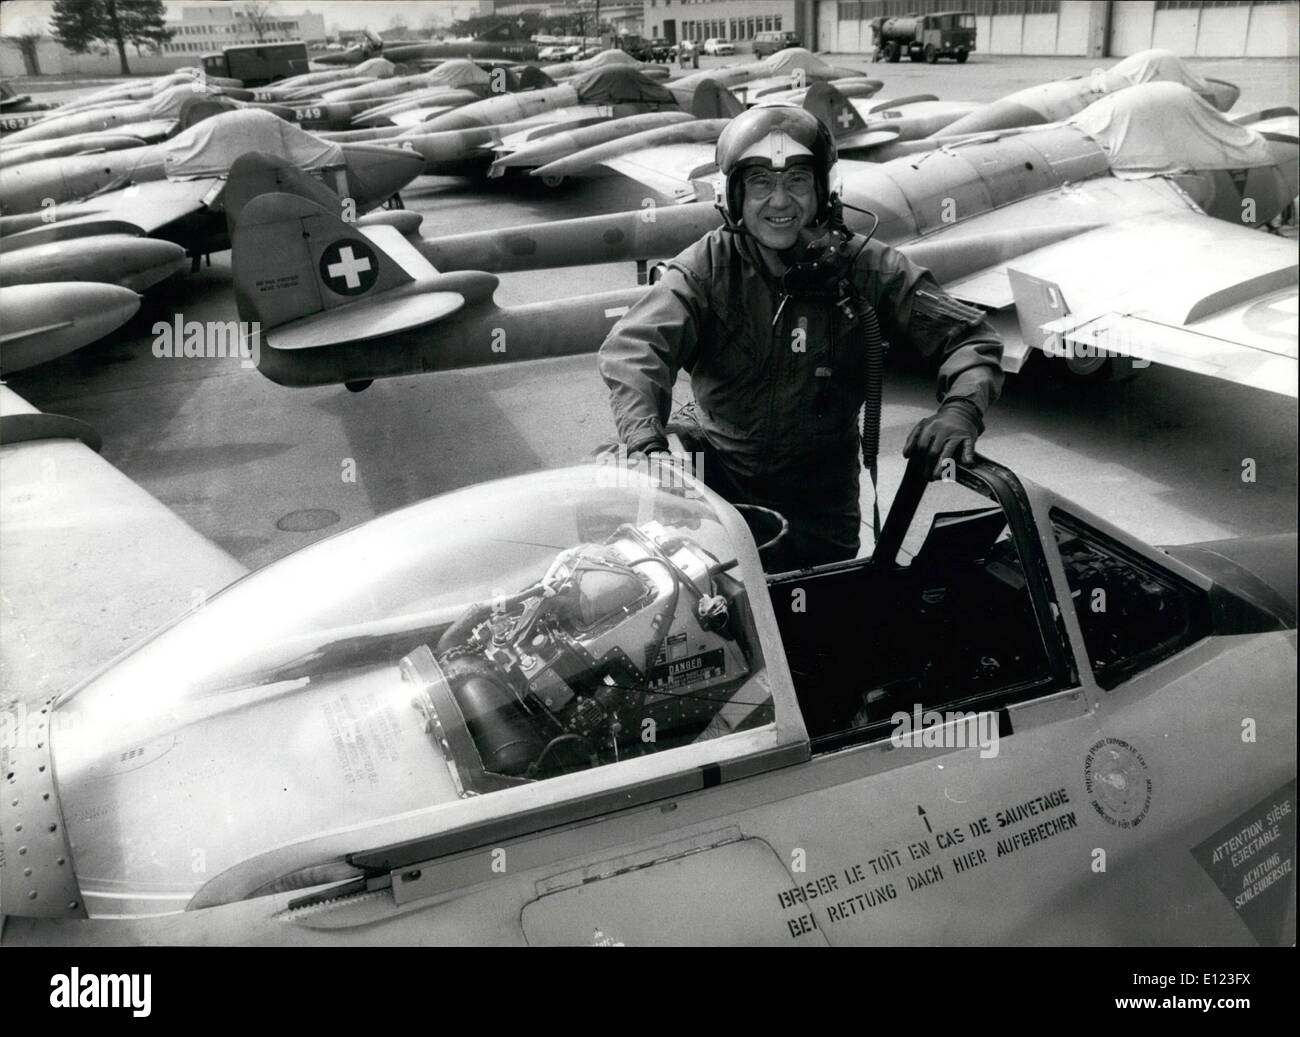 Apr. 04, 1984 - Un piano per gli amici giardino: per 6.000 Swiss Franciail militare istruttore pilota Walter Spinnler ha acquistato questa Foto Stock